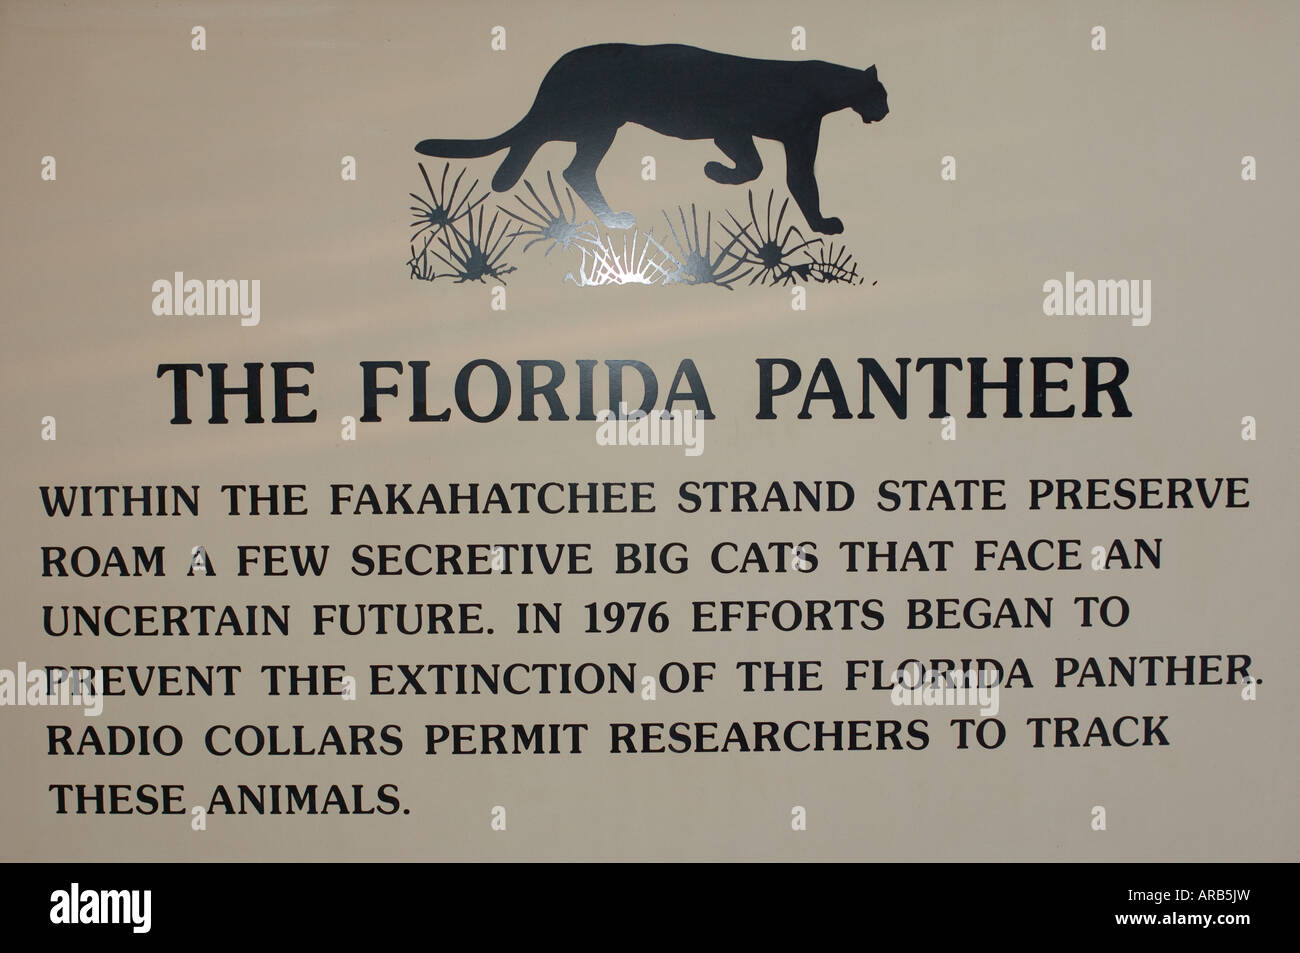 Melden Sie in den Fakahatchee Strand State Park in den Everglades, die Information der Besucher über die prekäre Lage der Florida Panther Stockfoto